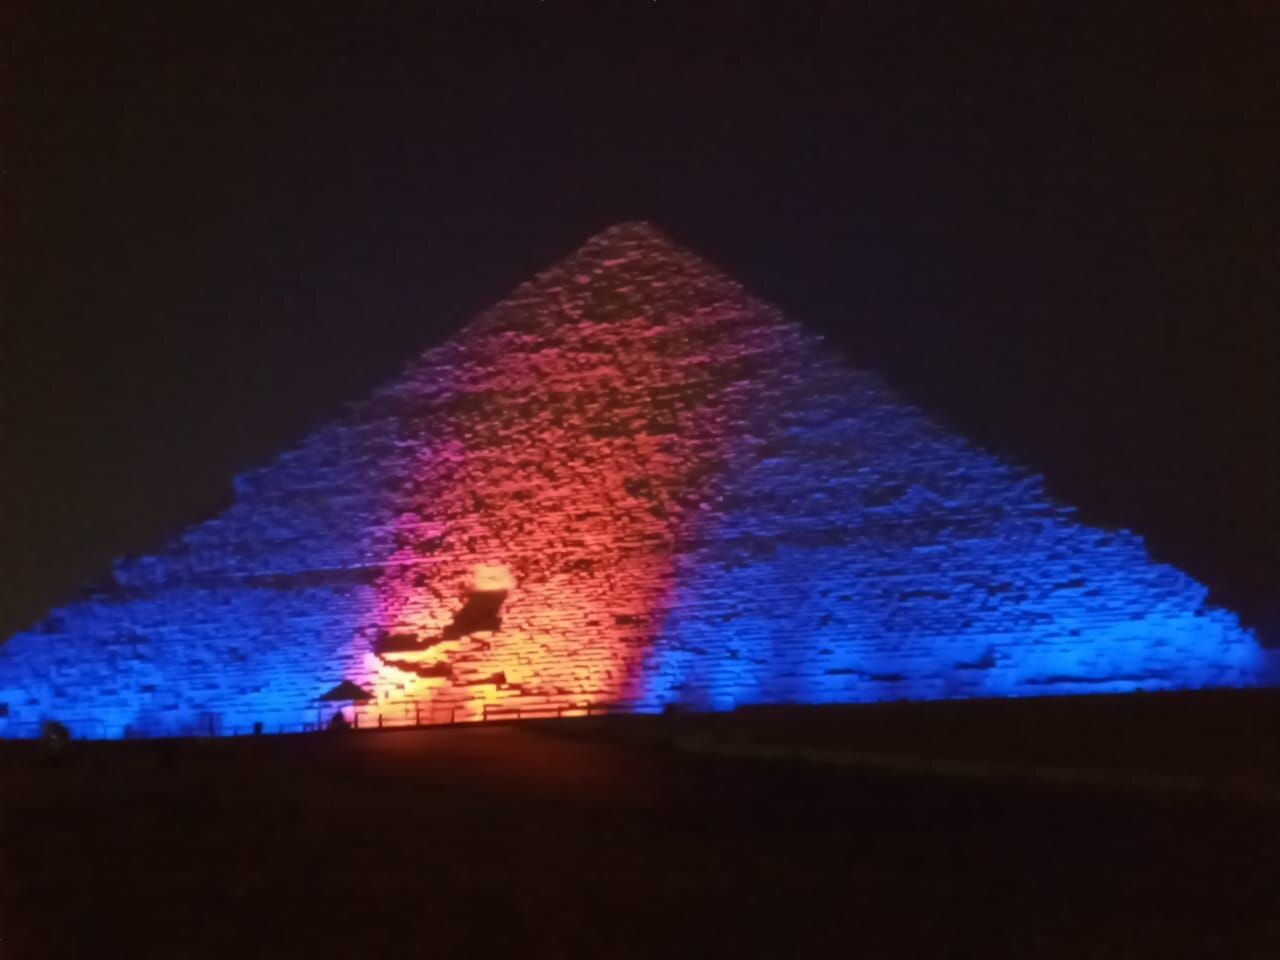 Піраміда Хеопса в Єгипті загорілася синім і помаранчевим світлом